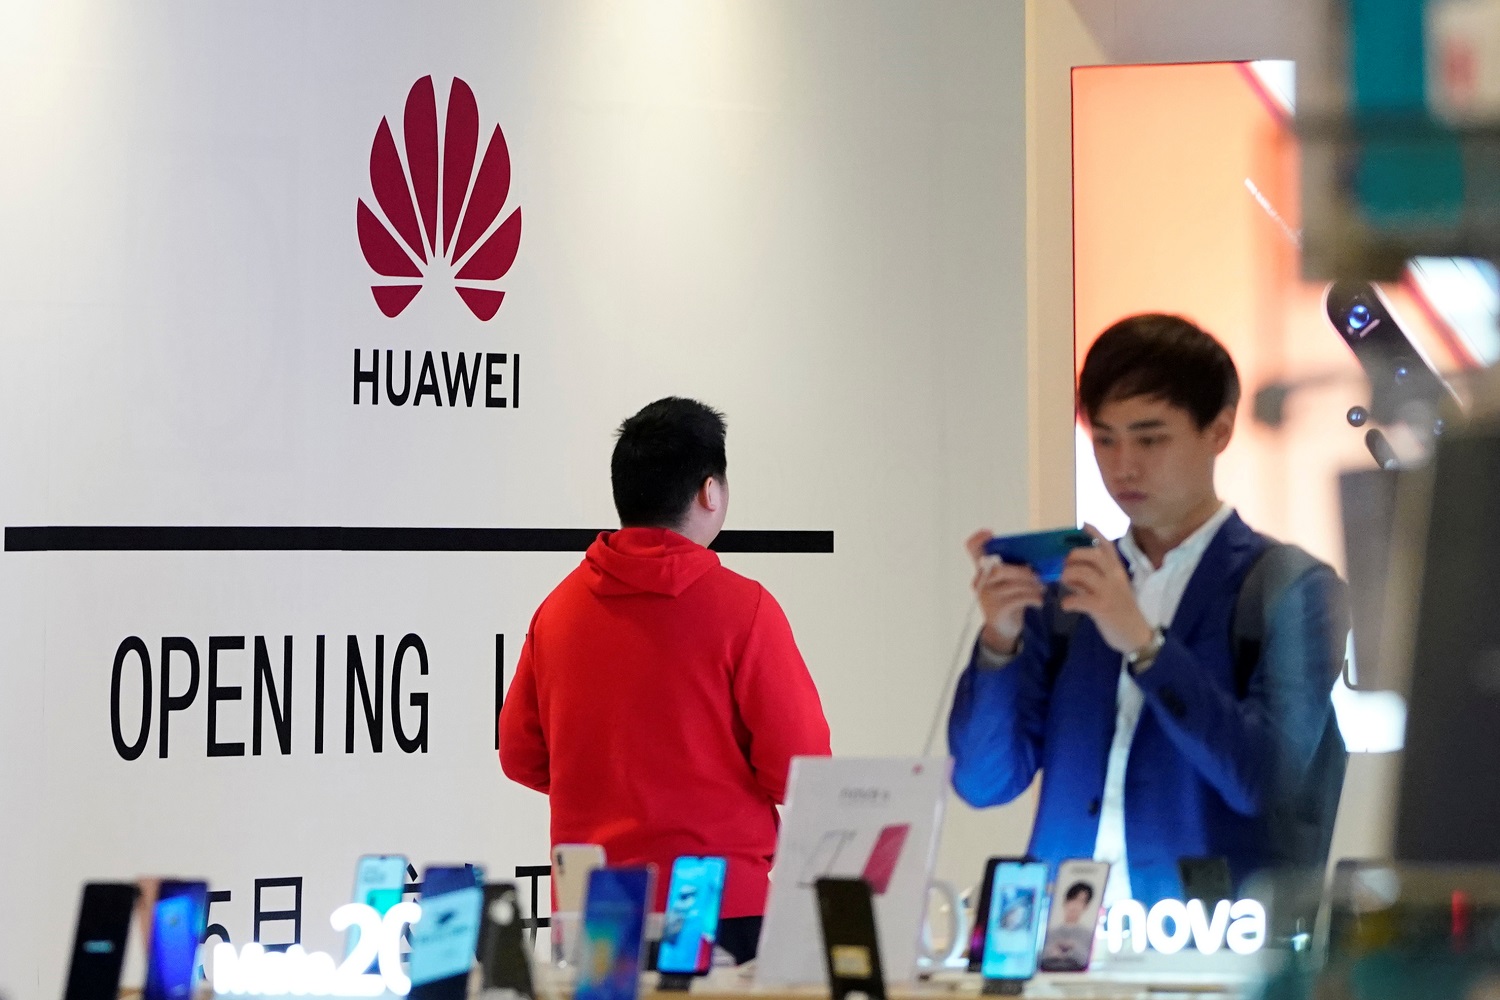 أجهزة هواوي معروضة في مجمع تجاري في شنغهاي الصينية، 16 مايو 2019. رويترز  